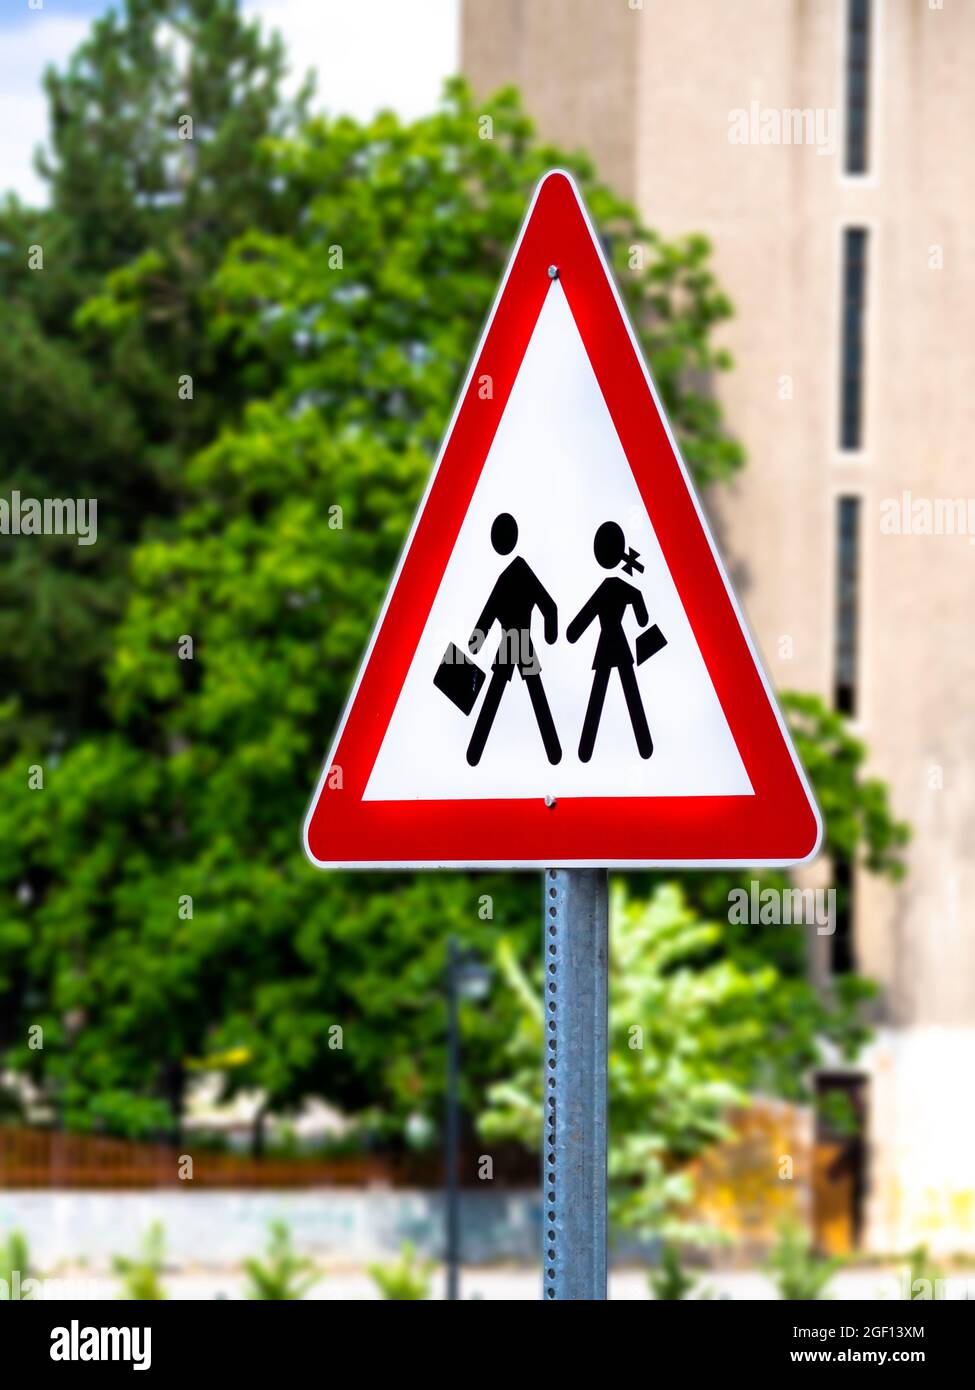 Grand ralentir enfants jouant de sécurité/Signal d'avertissement de sécurité routière Signes 